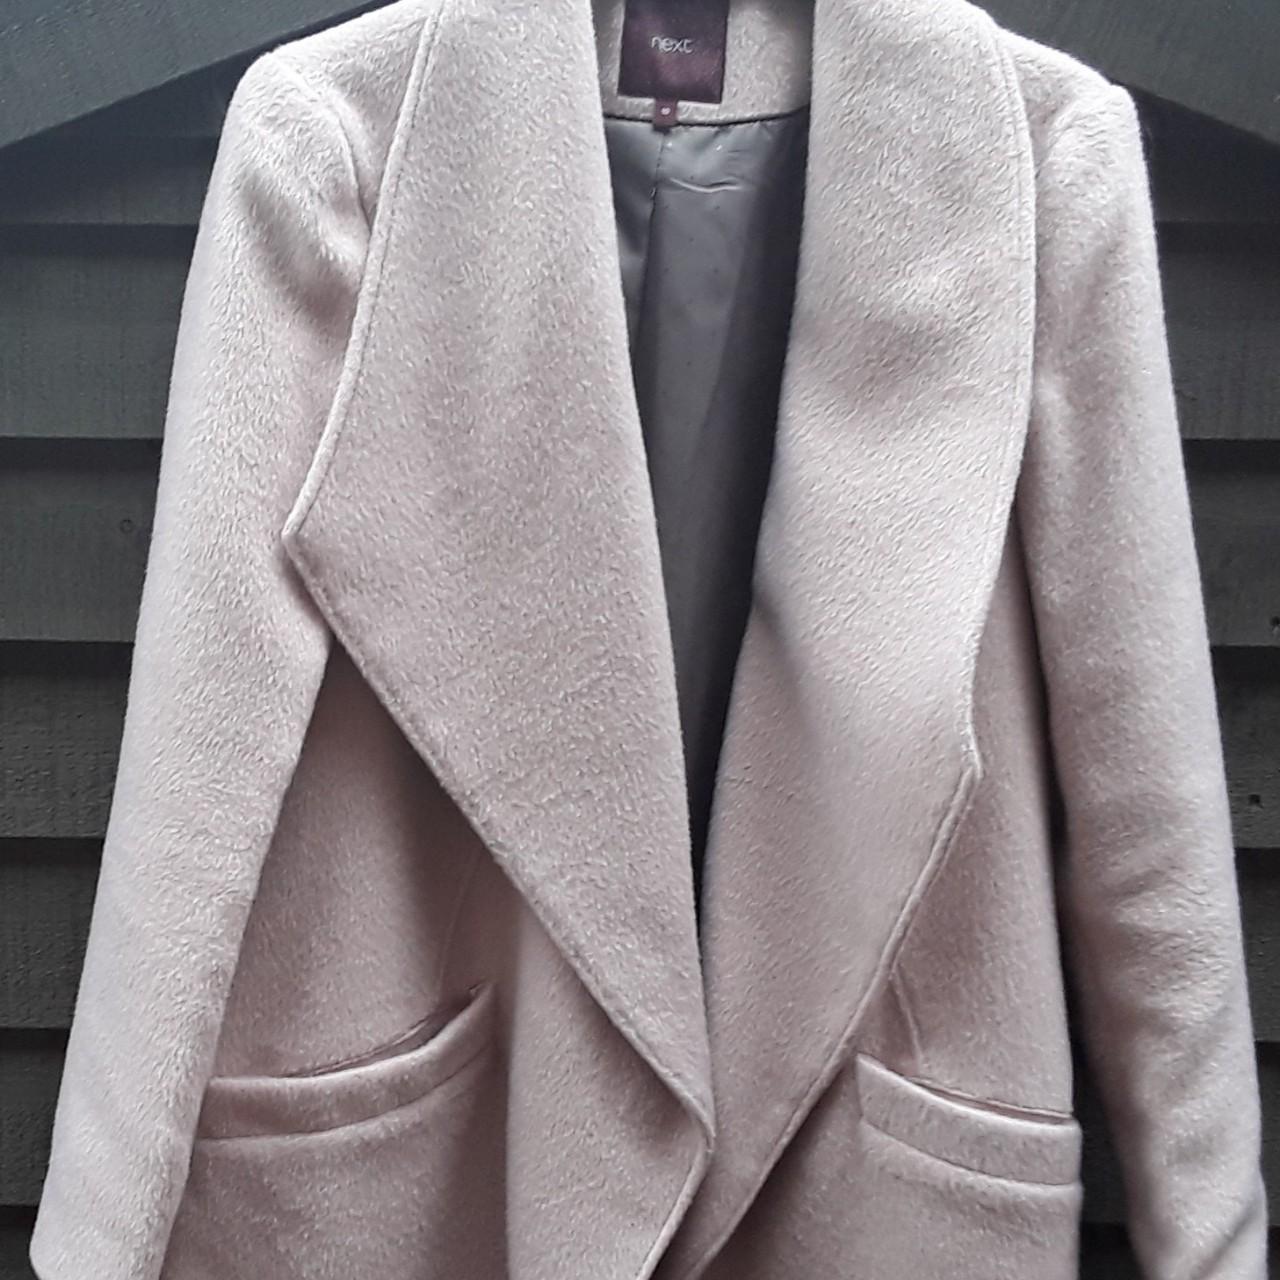 Next Women's Pink Coat | Depop